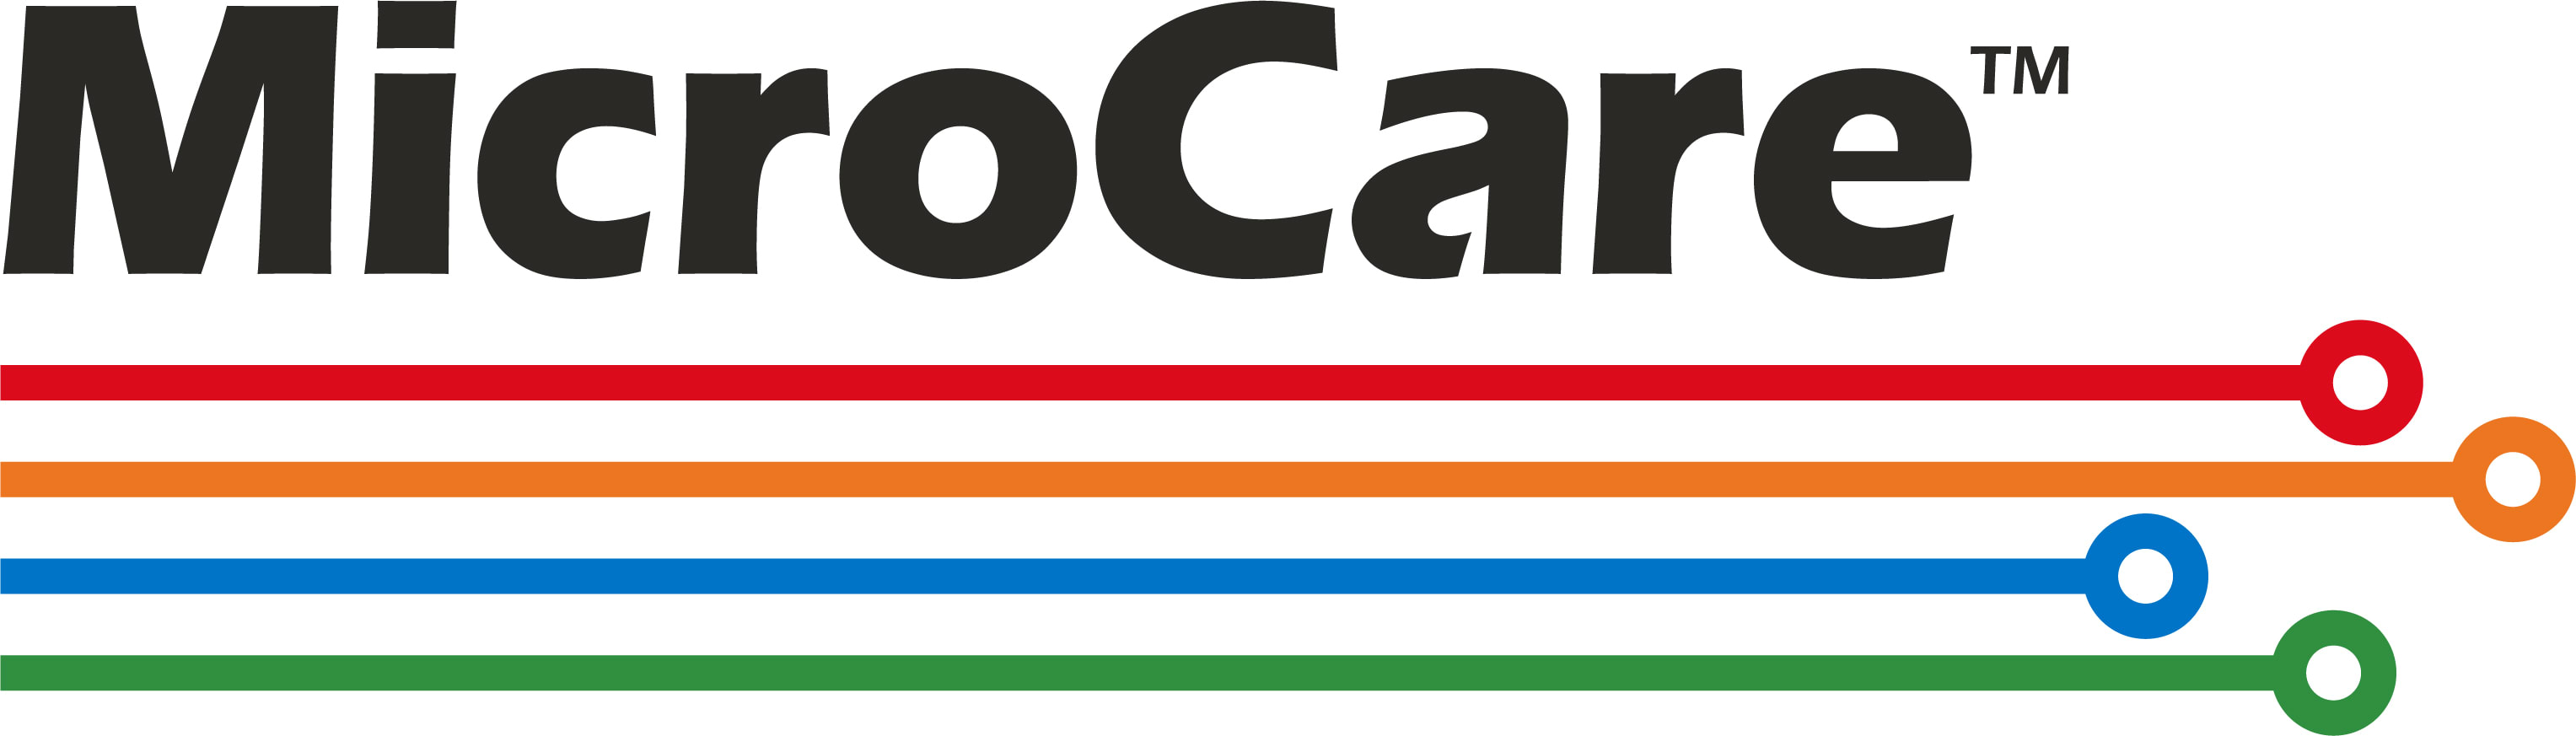 MicroCare_logo